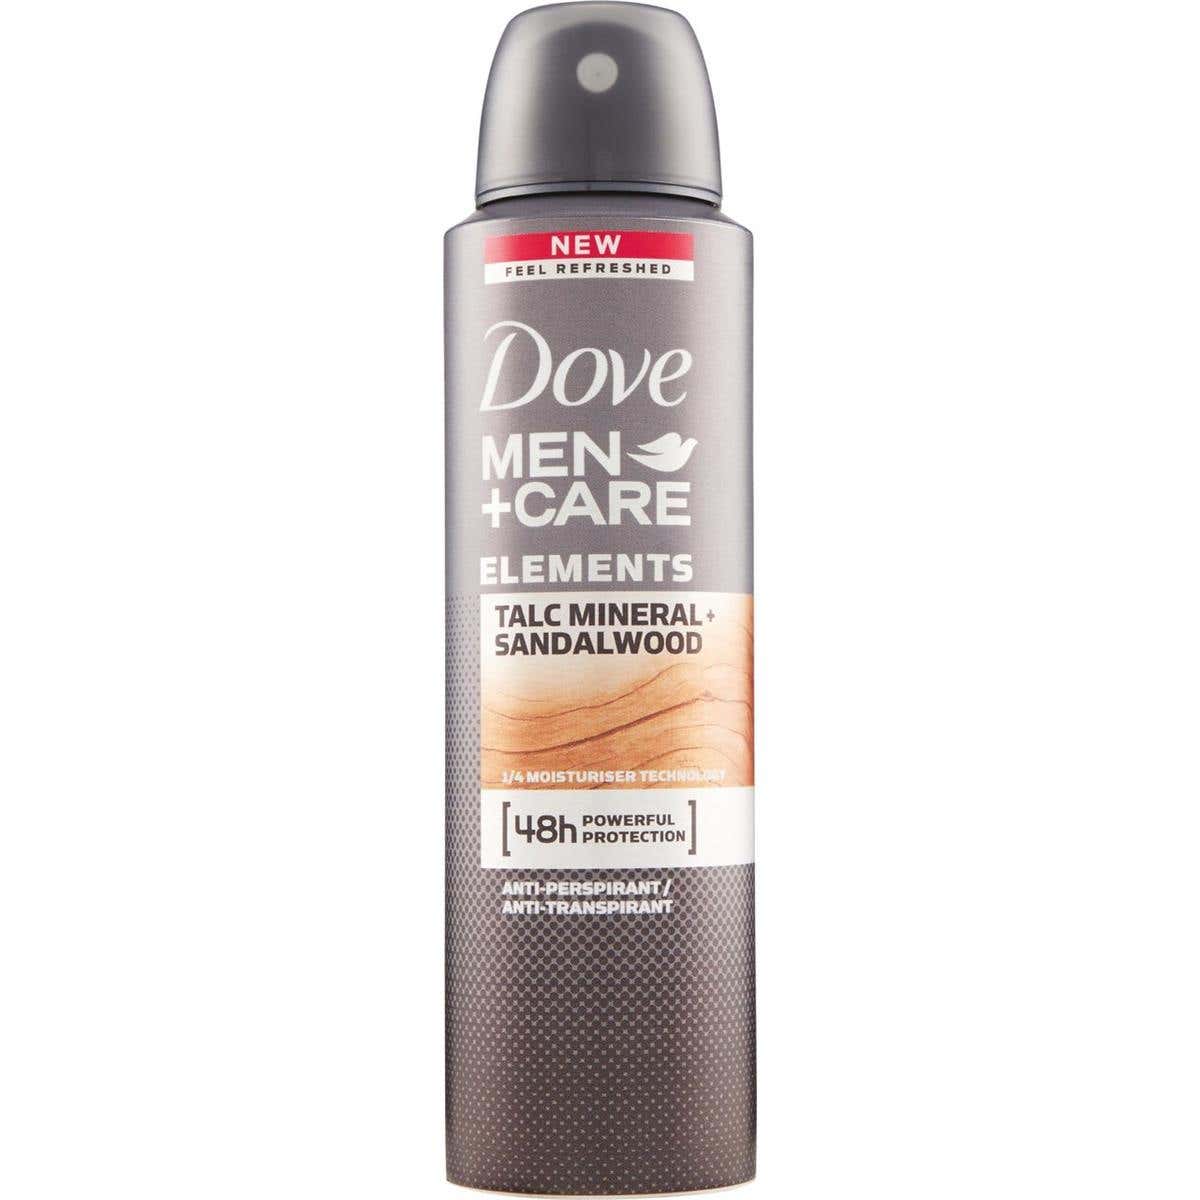 DOVE Dove Men + Care talc mineral & sandalwood spray 150ml